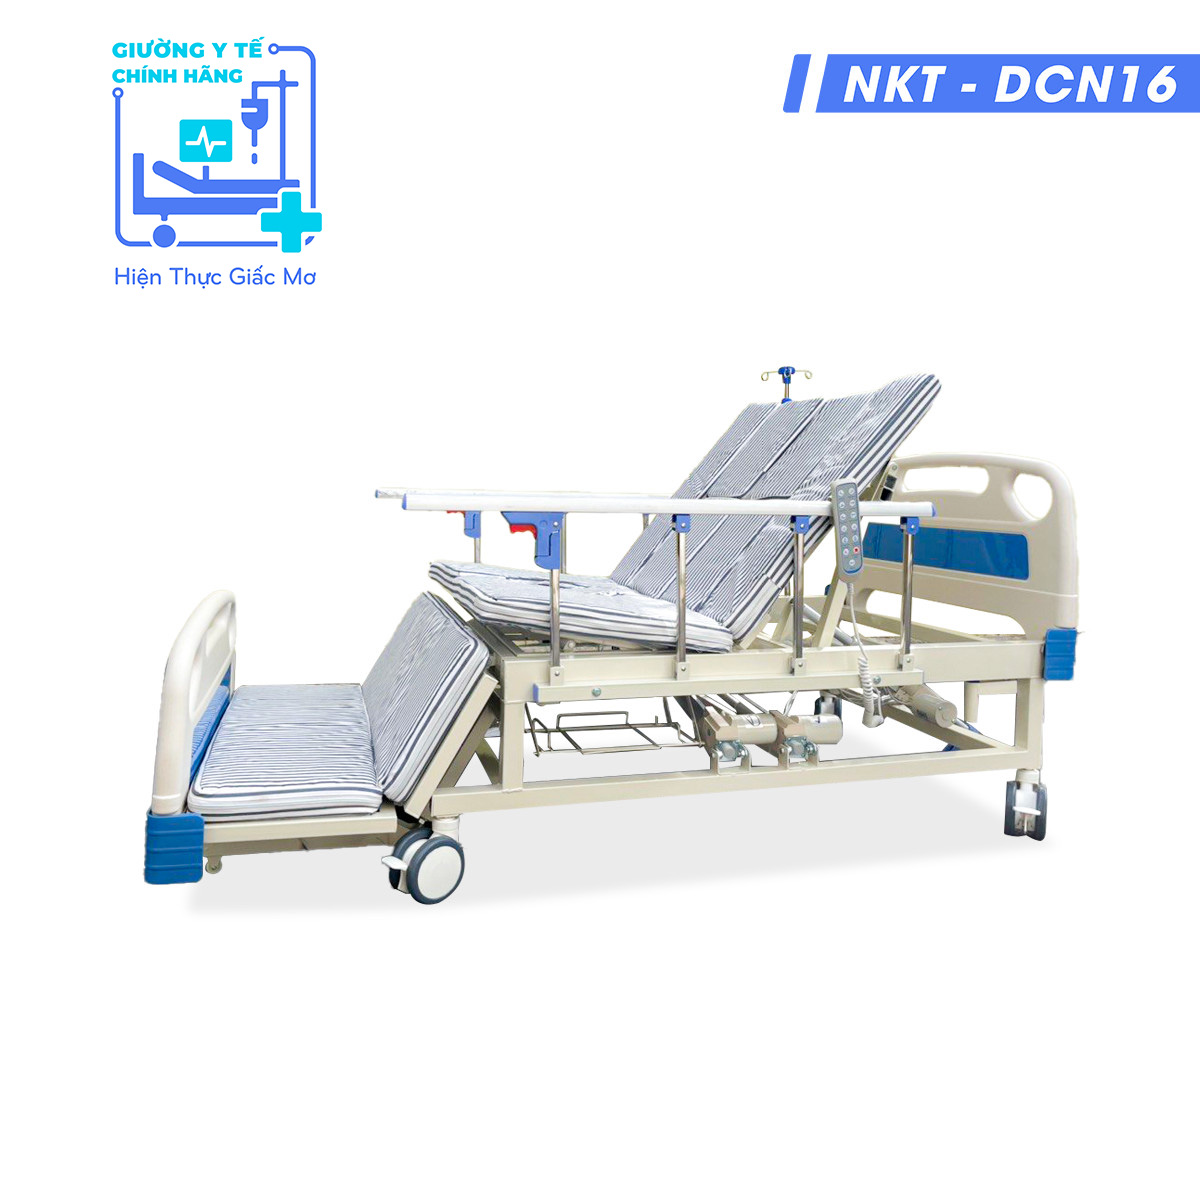 Giường Y Tế Điện Đa Chức Năng NKT-DCN16 (New)